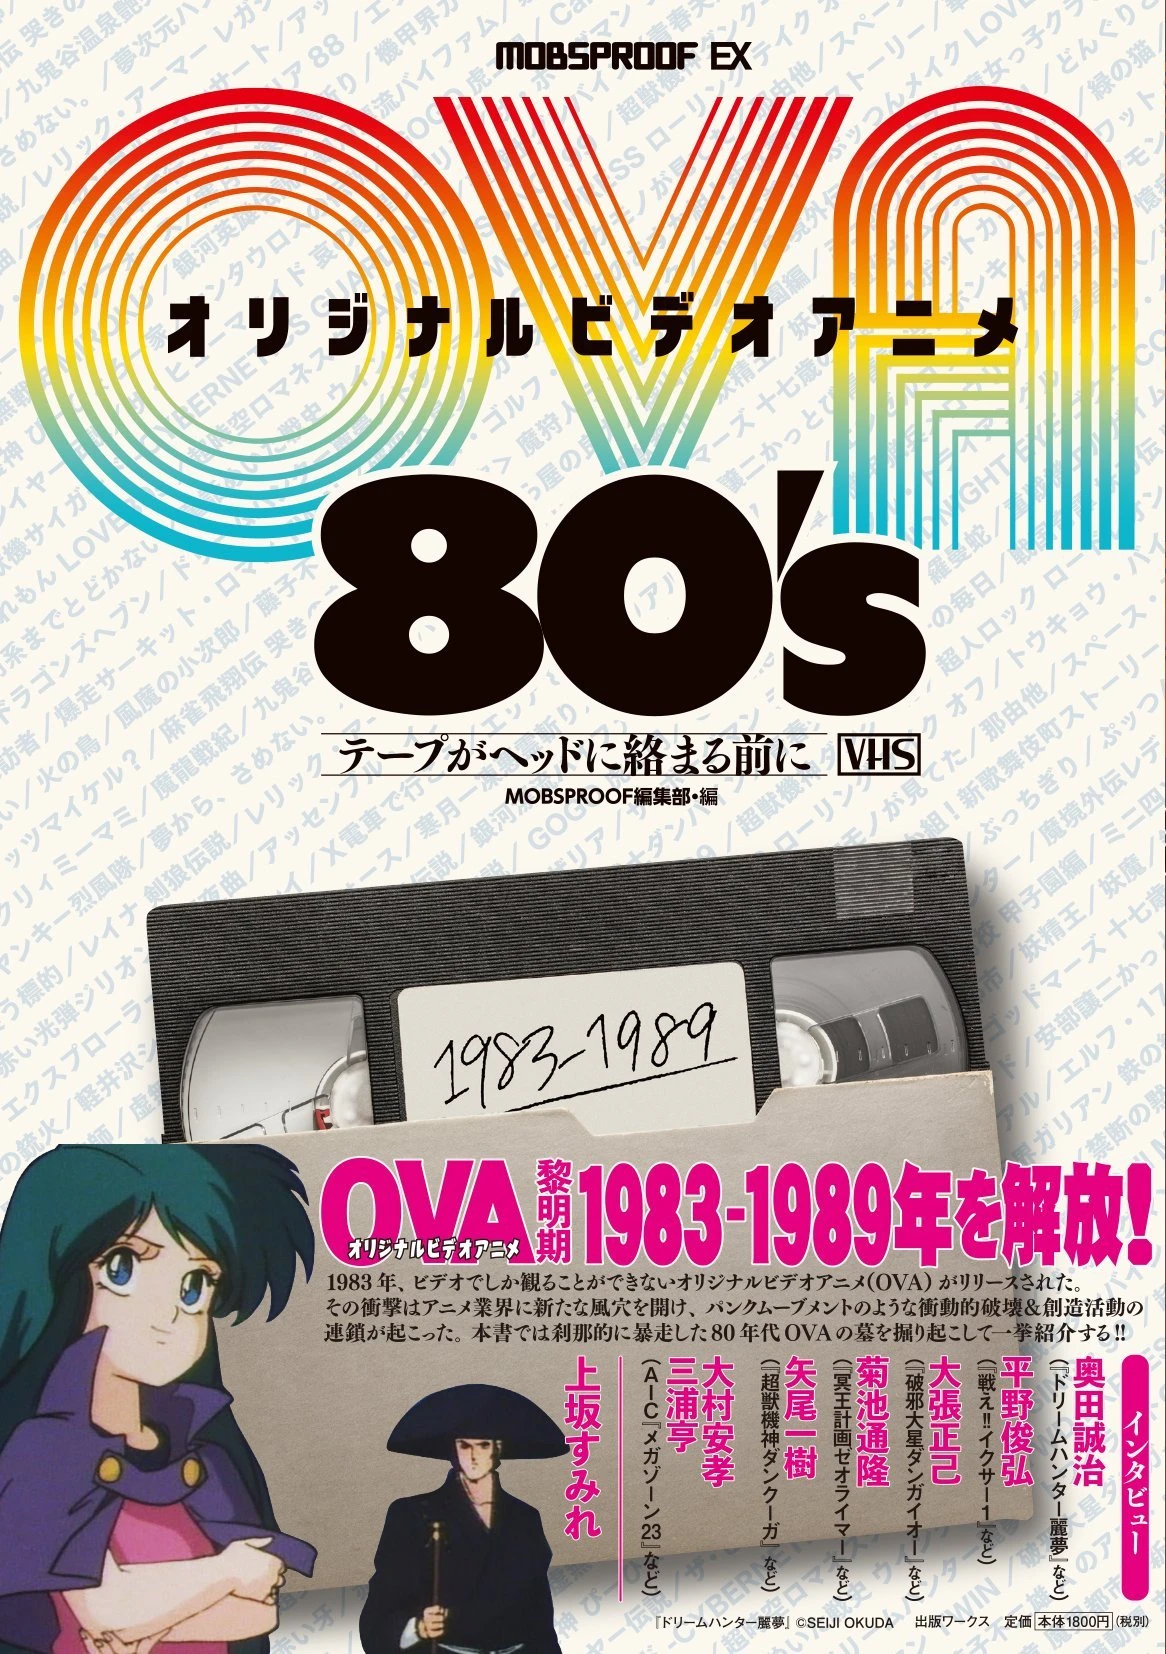 上坂すみれに大張正己 「80年代OVA」の魅力を墓場から掘り起こす